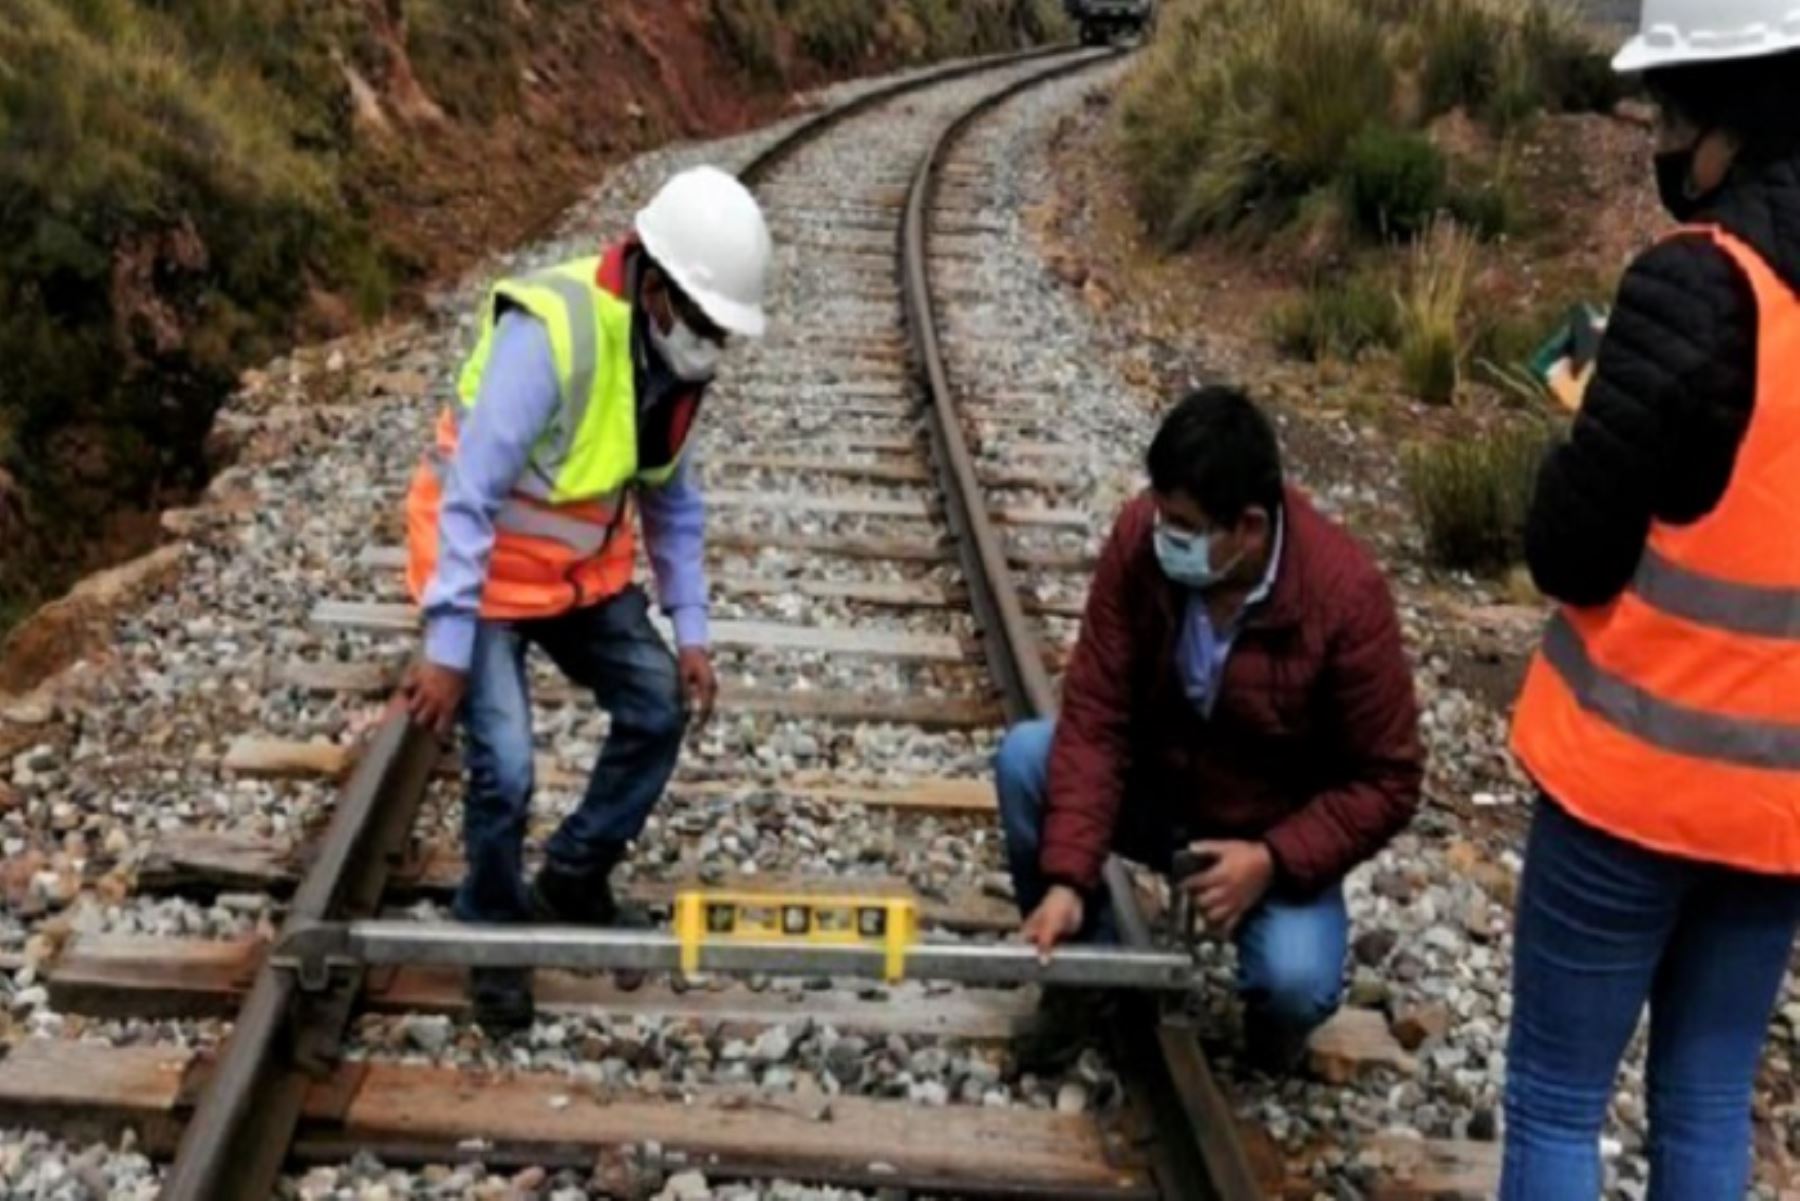 El MTC inició las gestiones ante las empresas concesionarias responsables del mantenimiento y conservación de la infraestructura y superestructura ferroviaria fiscalizada, para que se tomen acciones y levantar las observaciones identificadas.